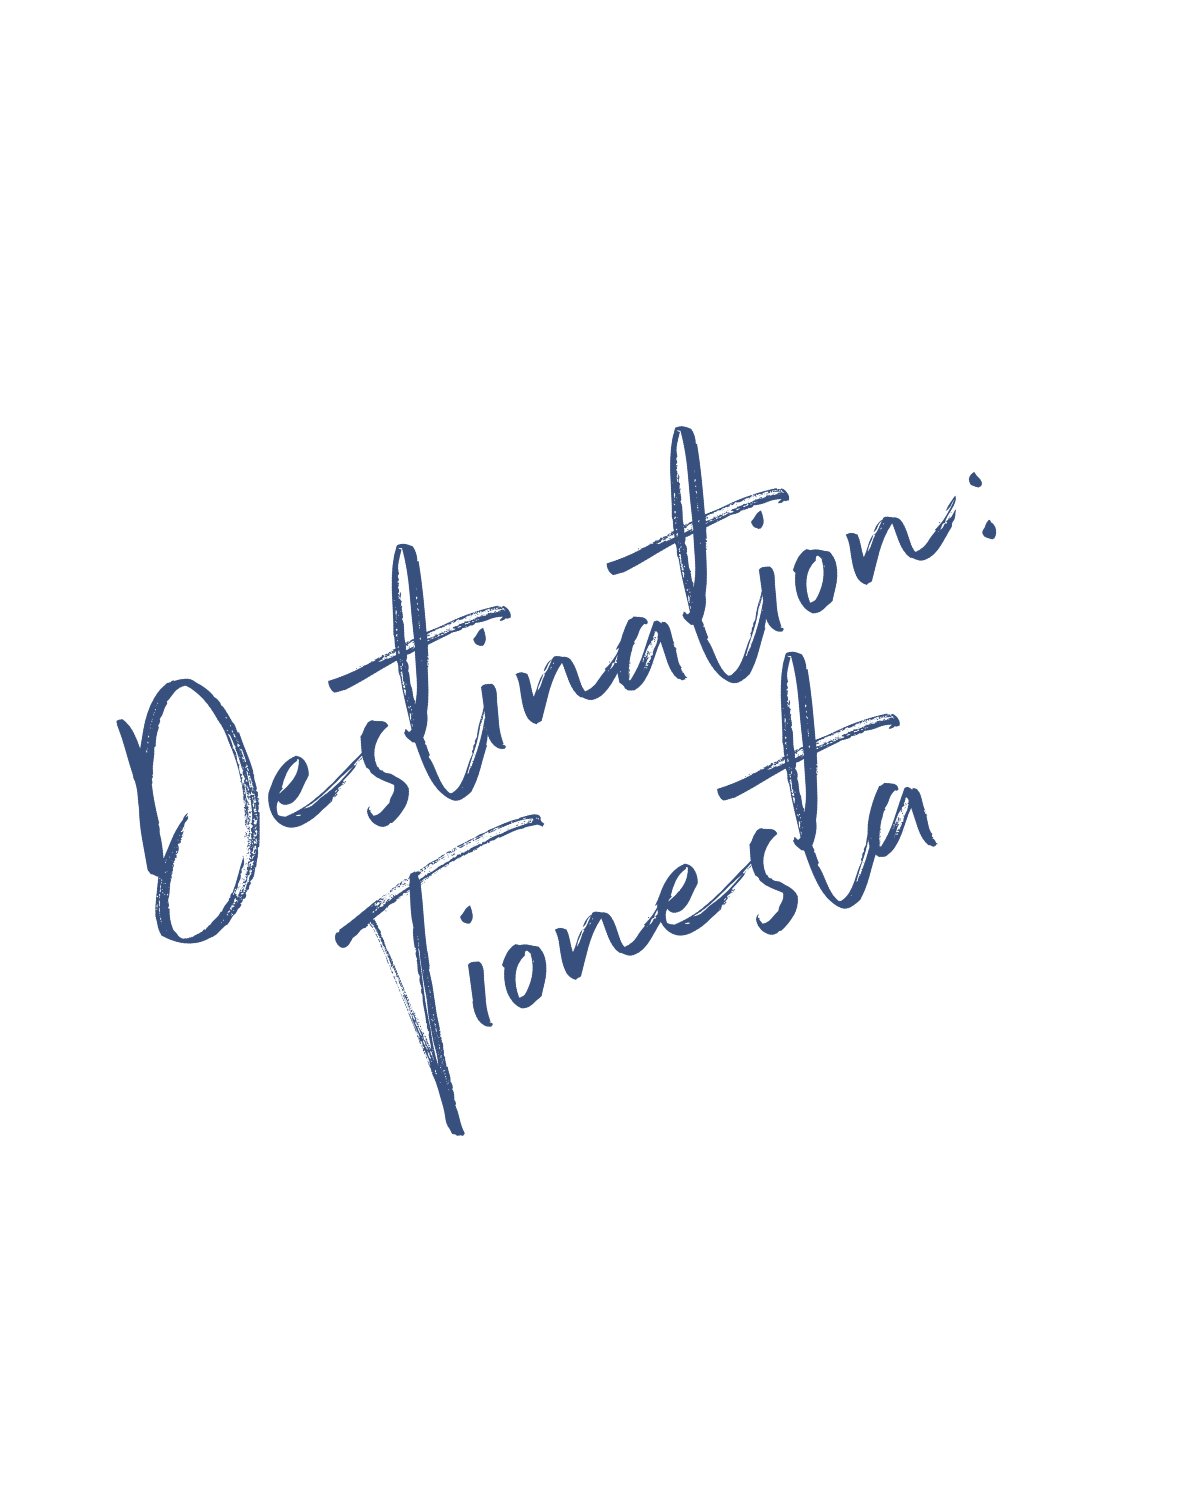 Destination Tionesta